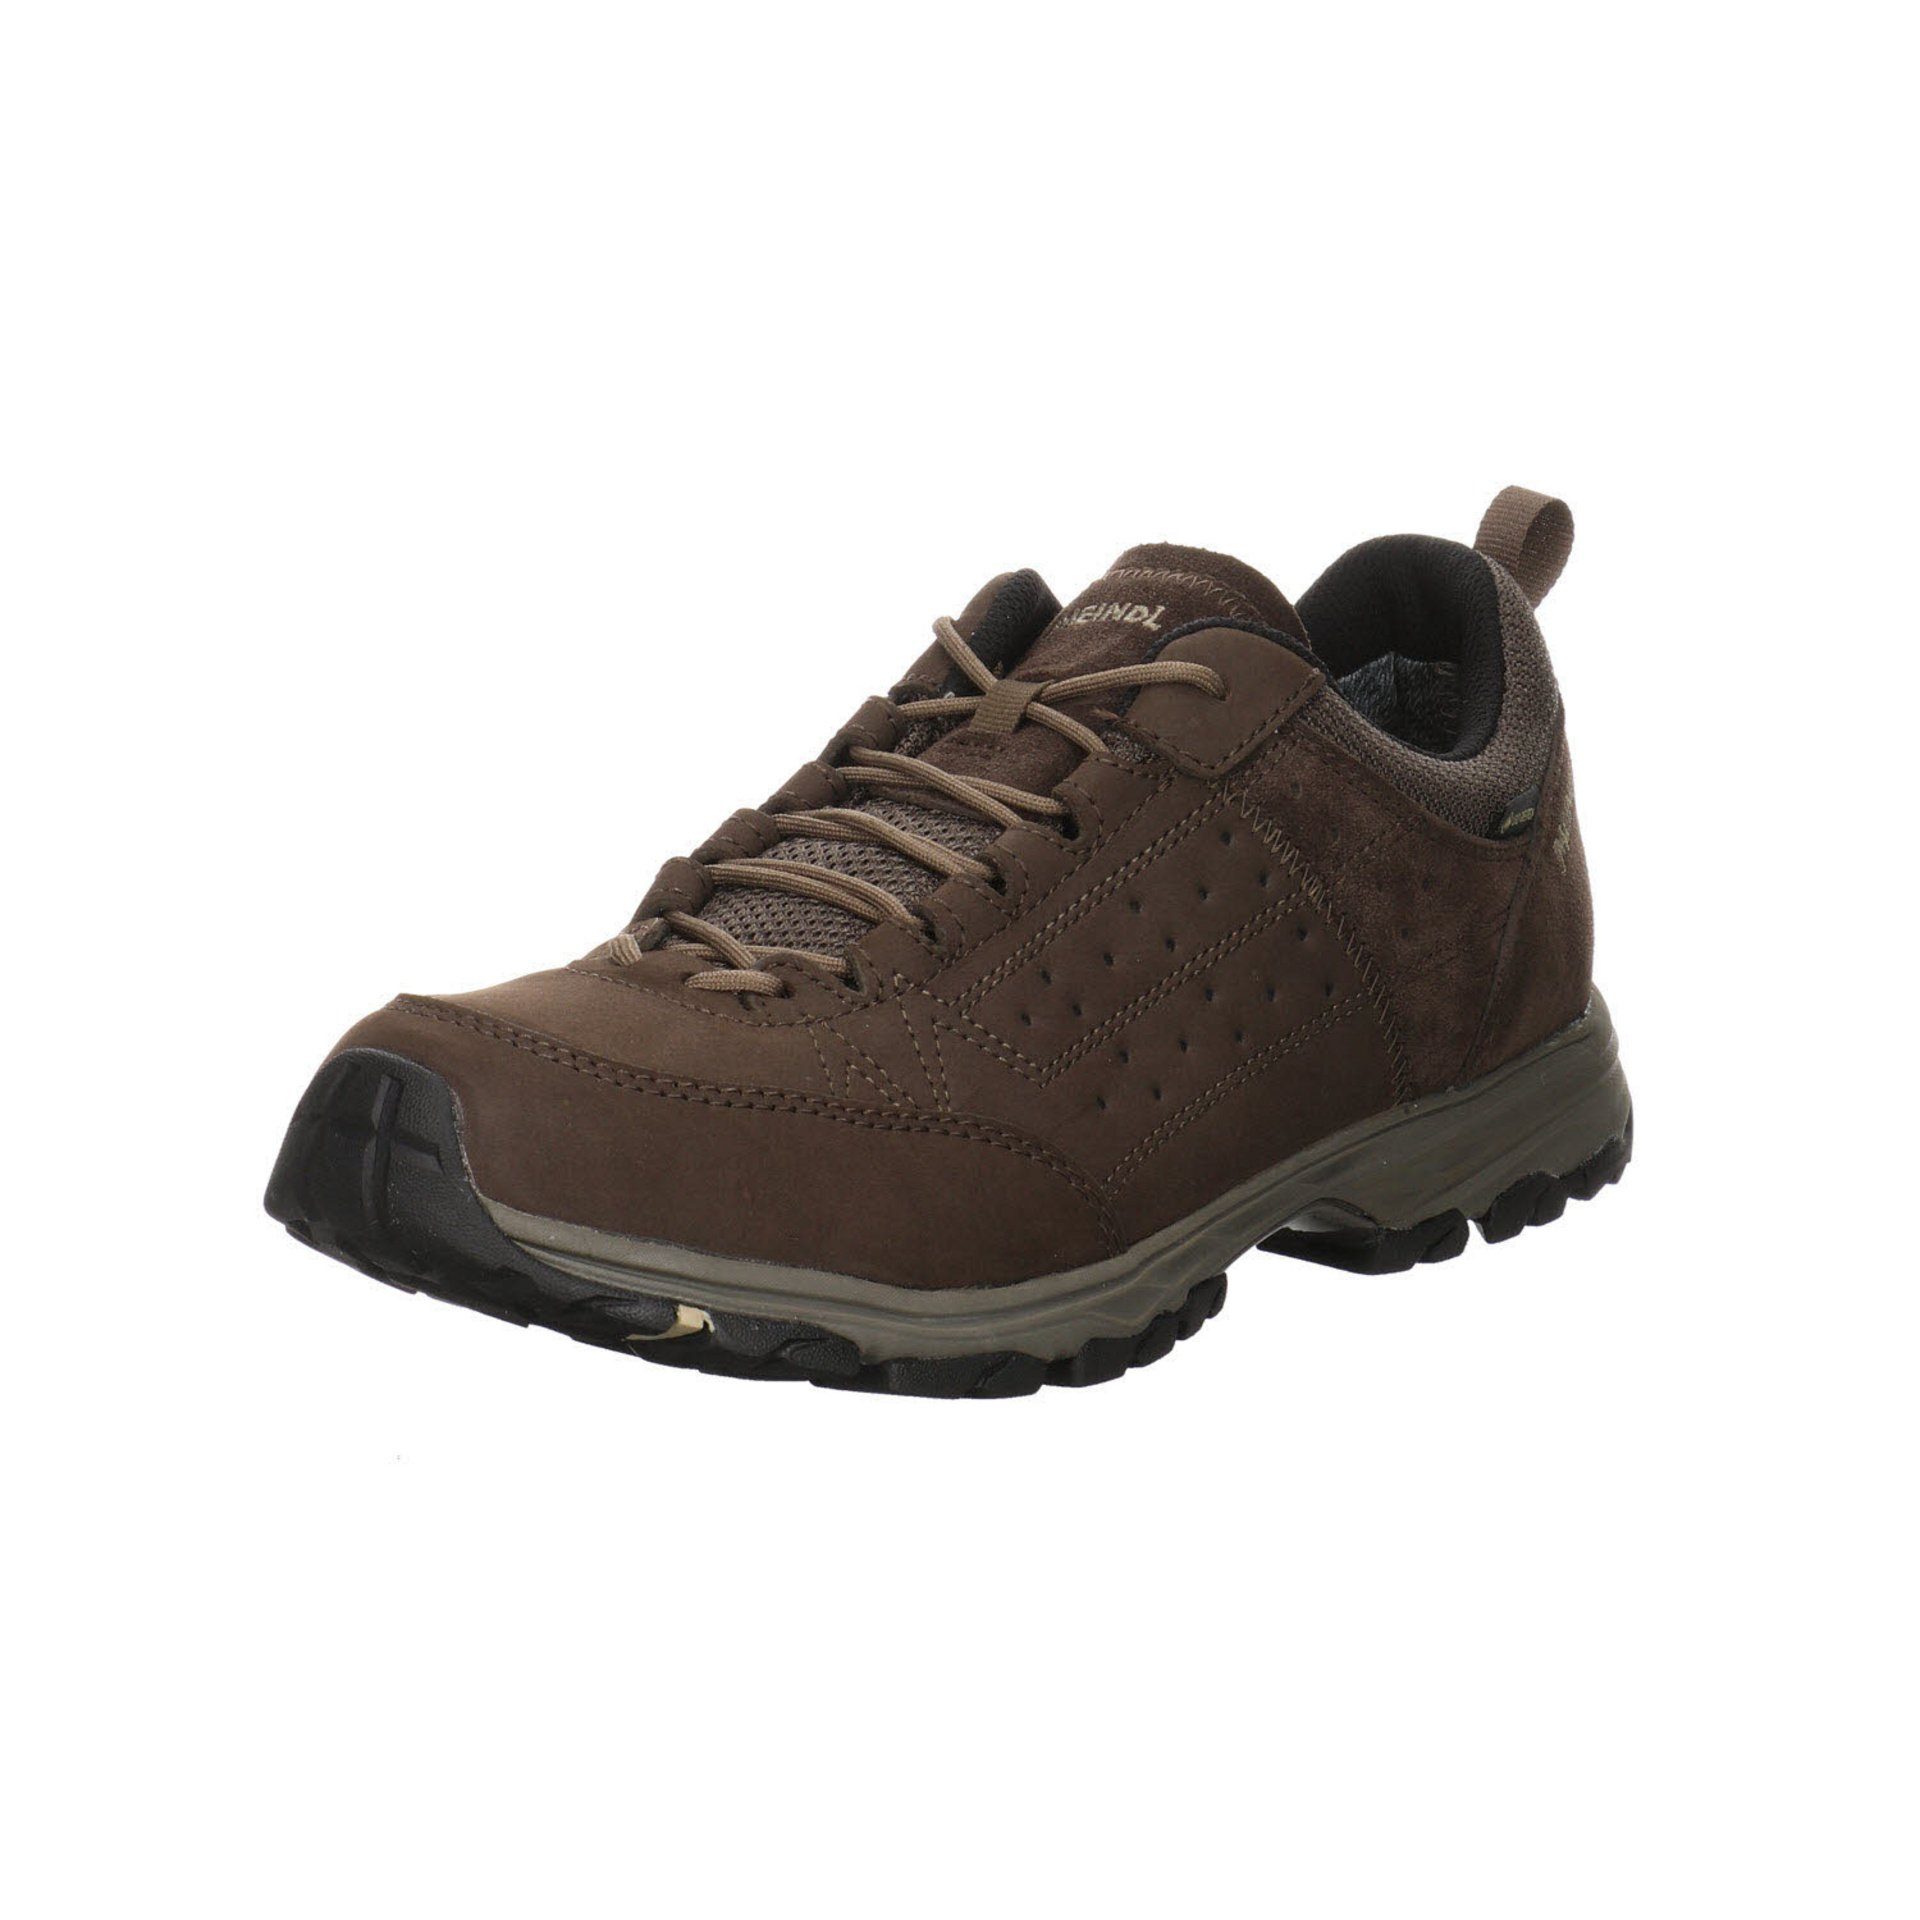 Meindl Herren Outdoor Schuhe Durban GTX Outdoorschuh Outdoorschuh Leder-/Textilkombination dunkelbraun